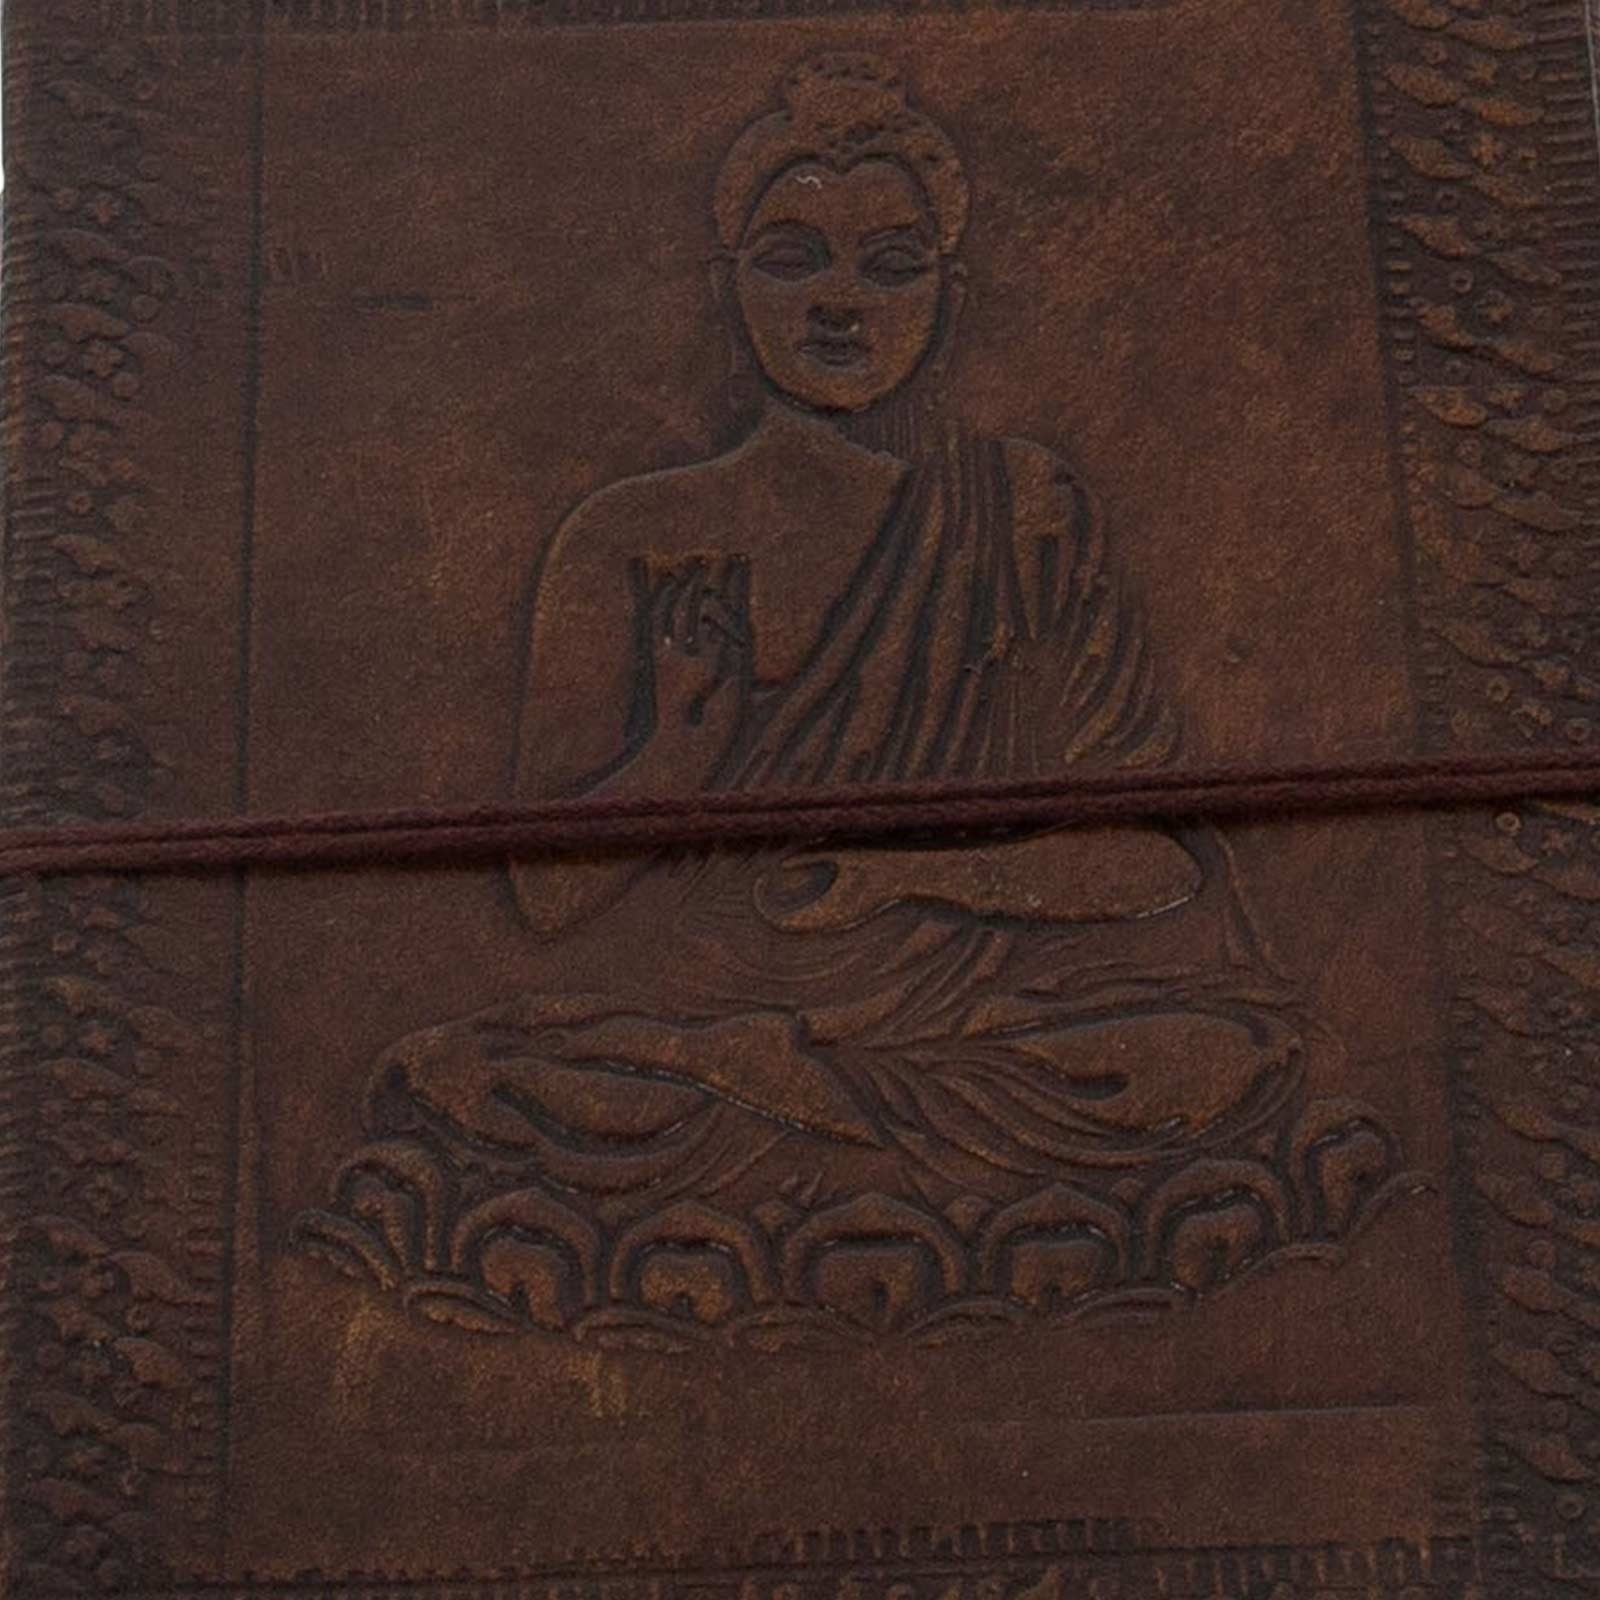 Tagebuch Buddha 18x13cm UND - Tagebuch Notizbuch KUNST MAGIE Leder geprägtes handgefertigt